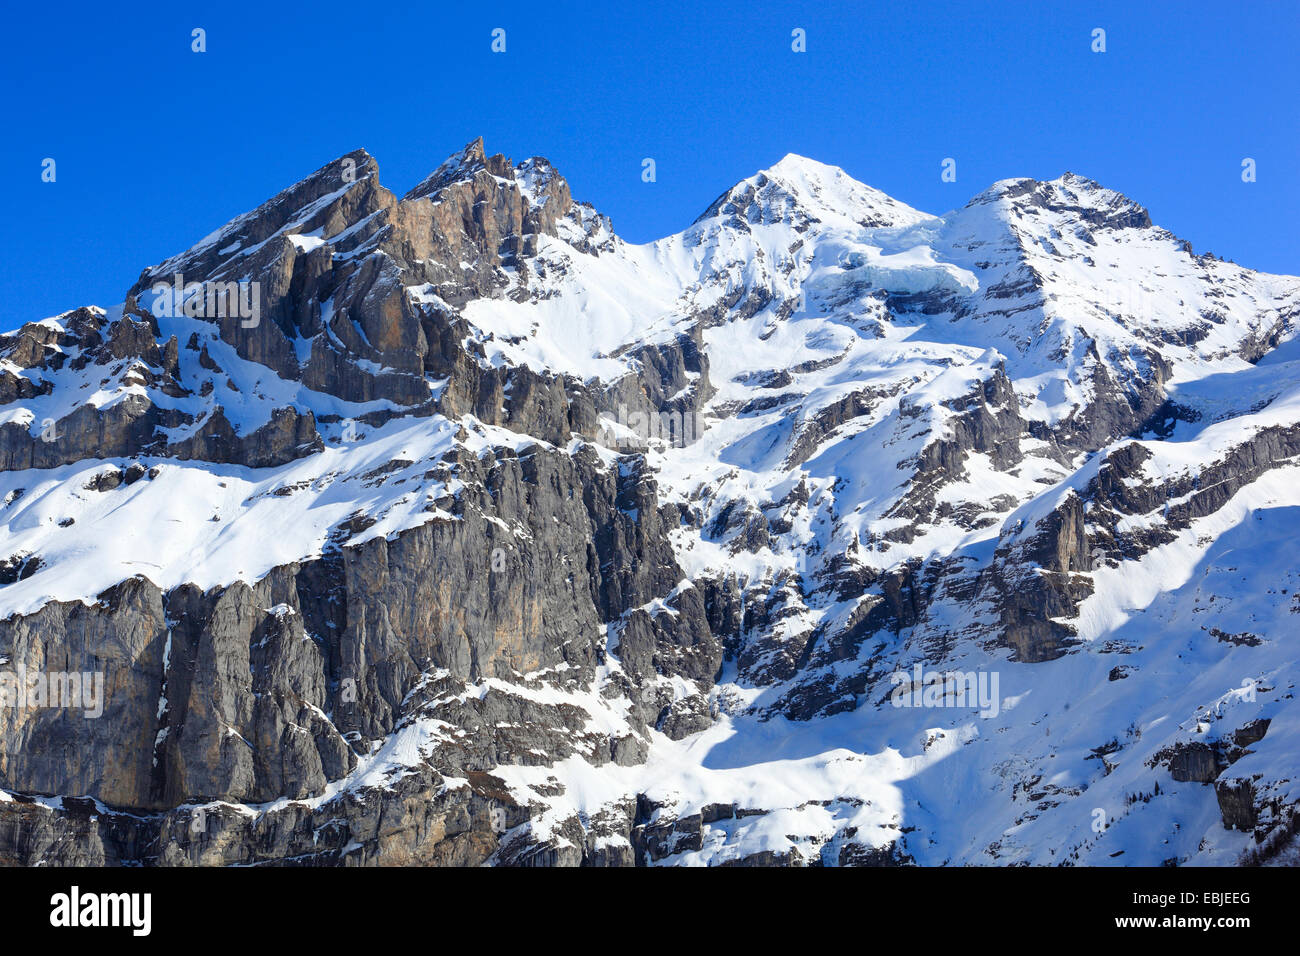 Blueemlisalp Rothorn, Blueemlisalphorn and Oeschinenhorn of Bernese Alps, Switzerland Stock Photo